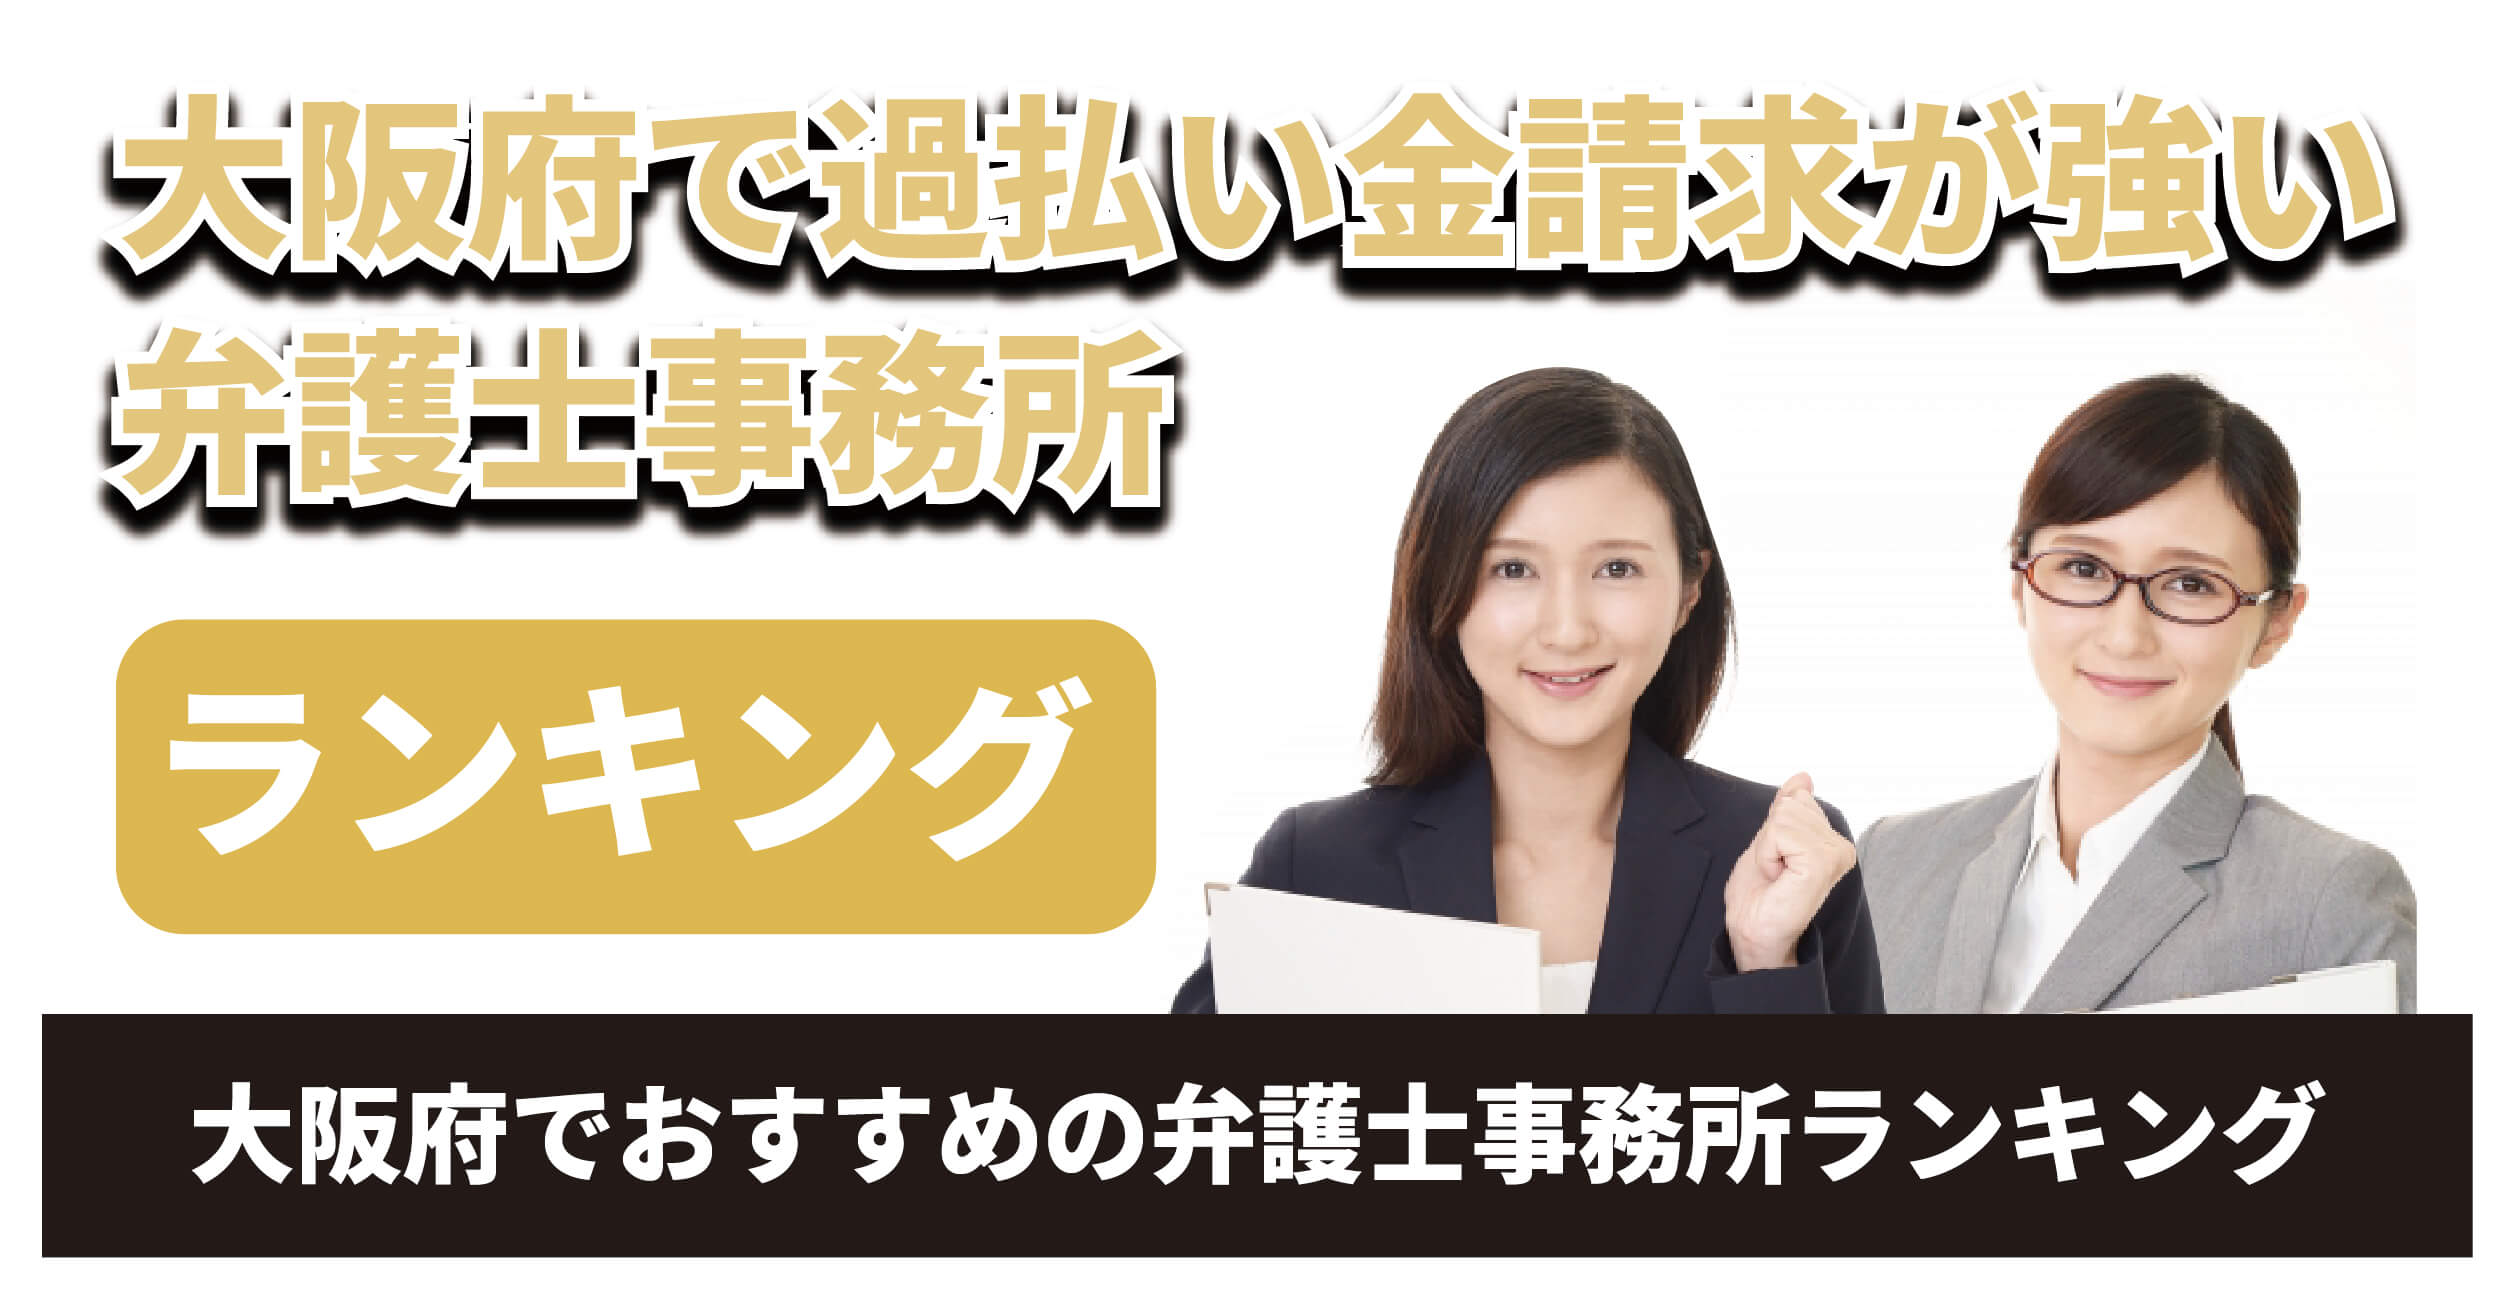 大阪で過払い金請求に強い法律事務所を選ぶ3のポイント